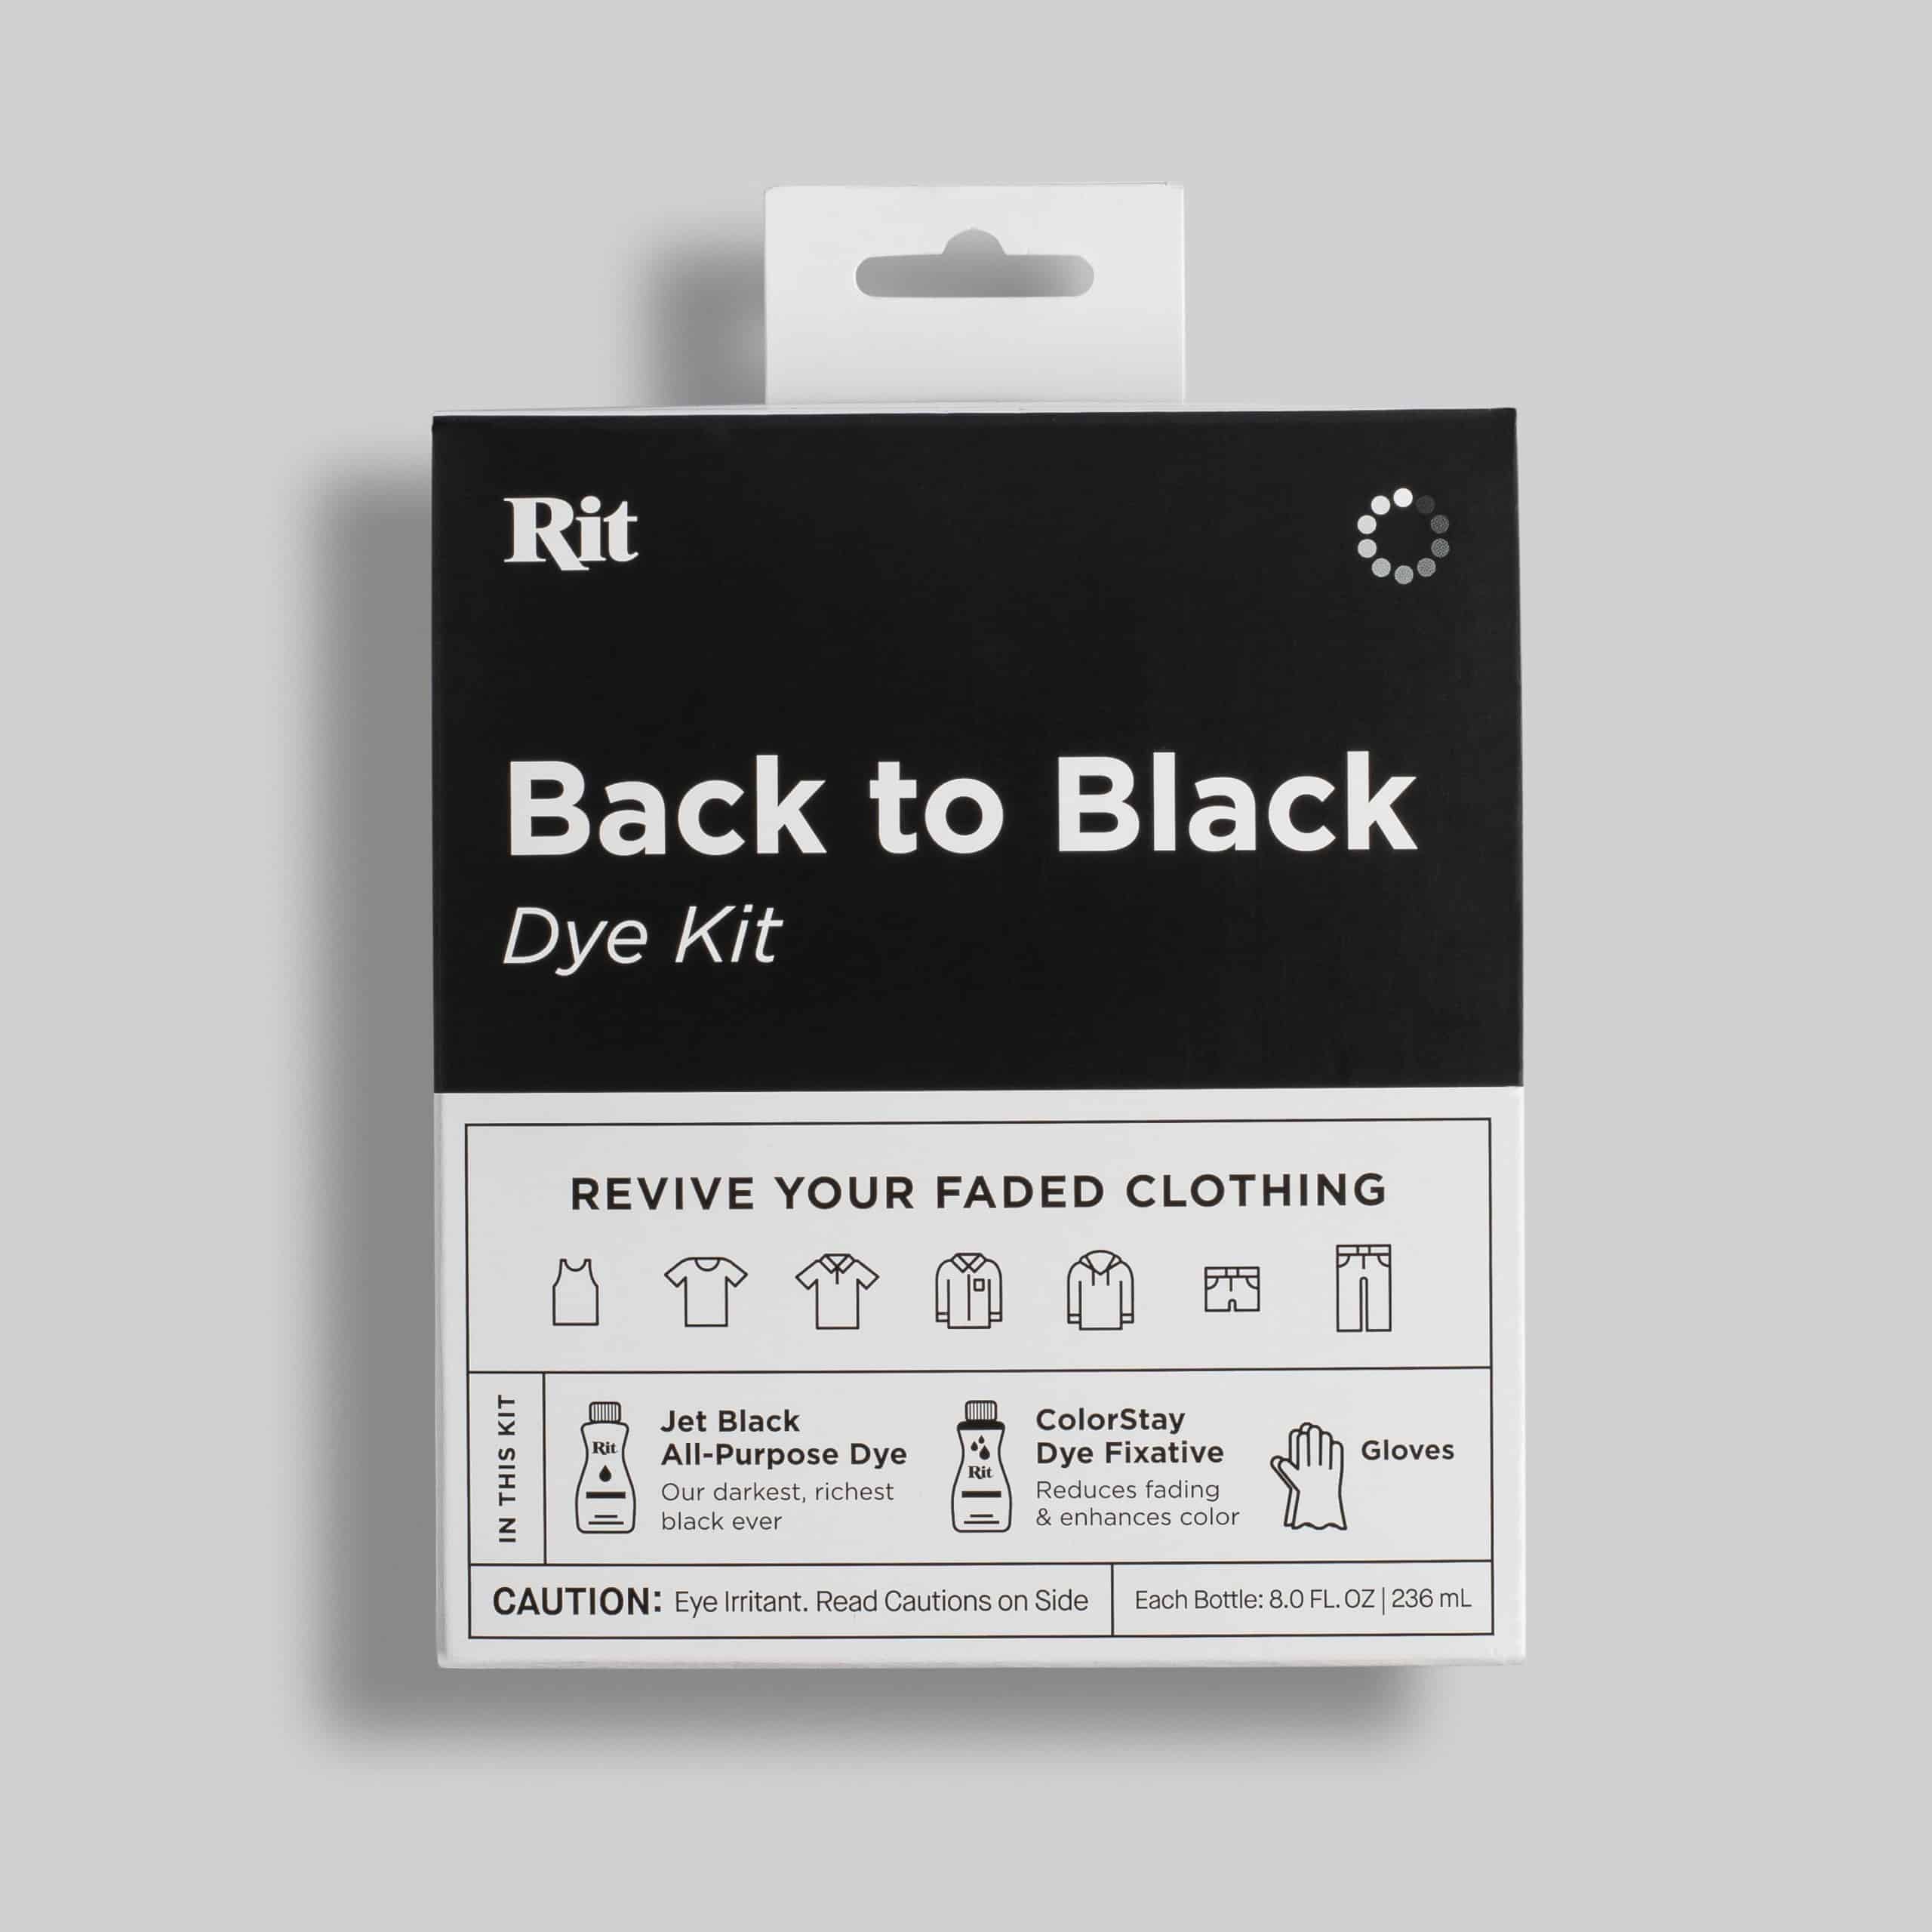 Back to Black Dye Kit – Rit Dye